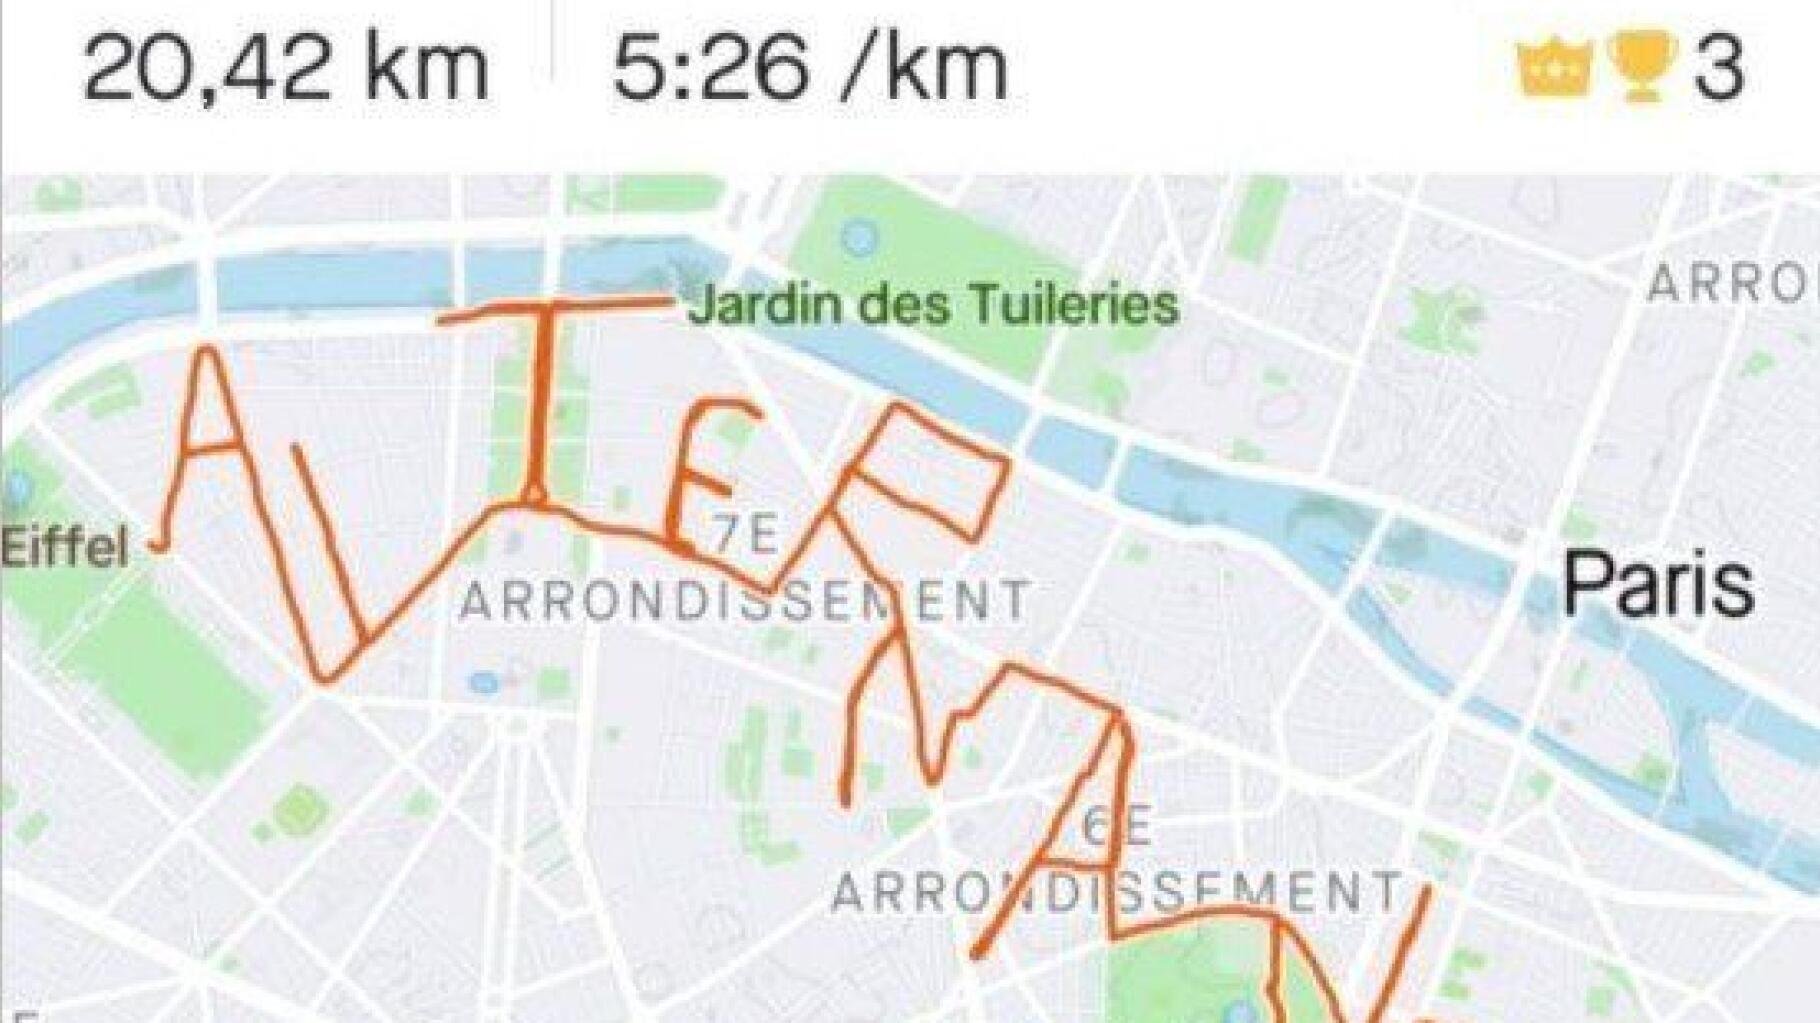 Pour trouver une alternance, elle court 20km dans les rues de Paris